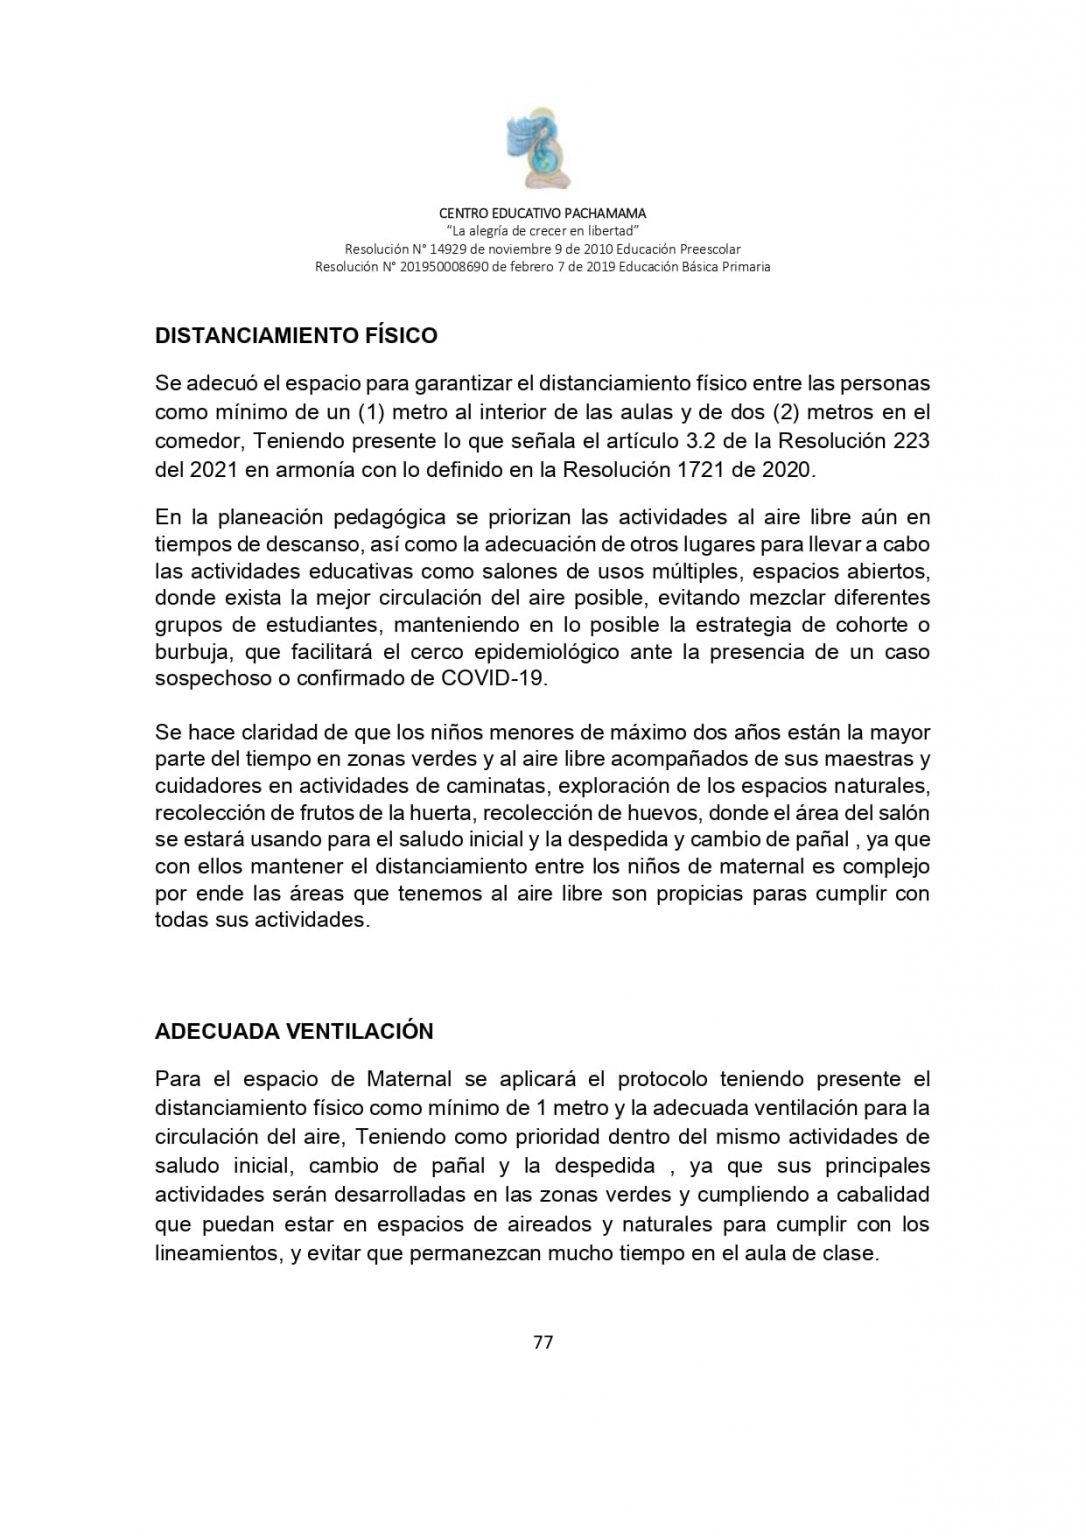 PROTOCOLO DE BIOSEGURIDAD PACHAMAMA Última Versión (3)-convertido_page-0077